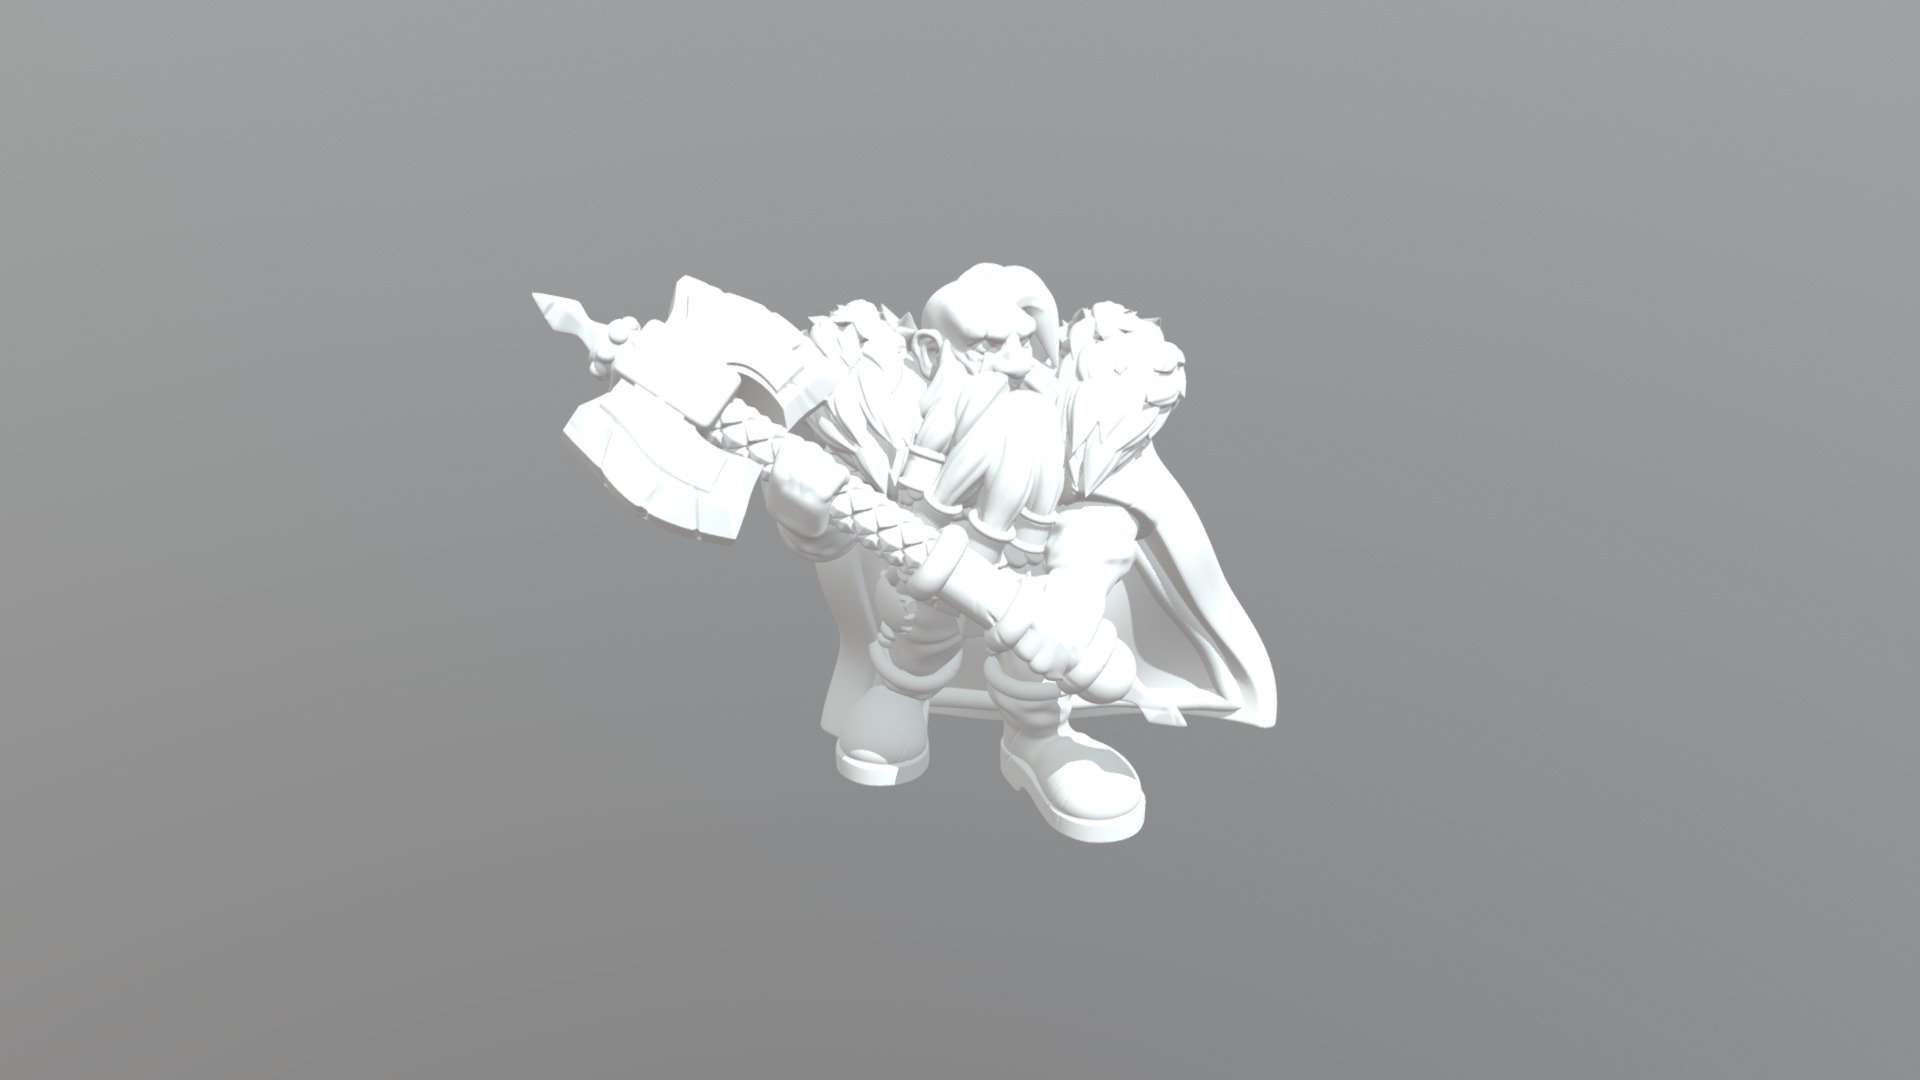 Dwarf Warlord - 3D model by Justin (@justinc) 3d model